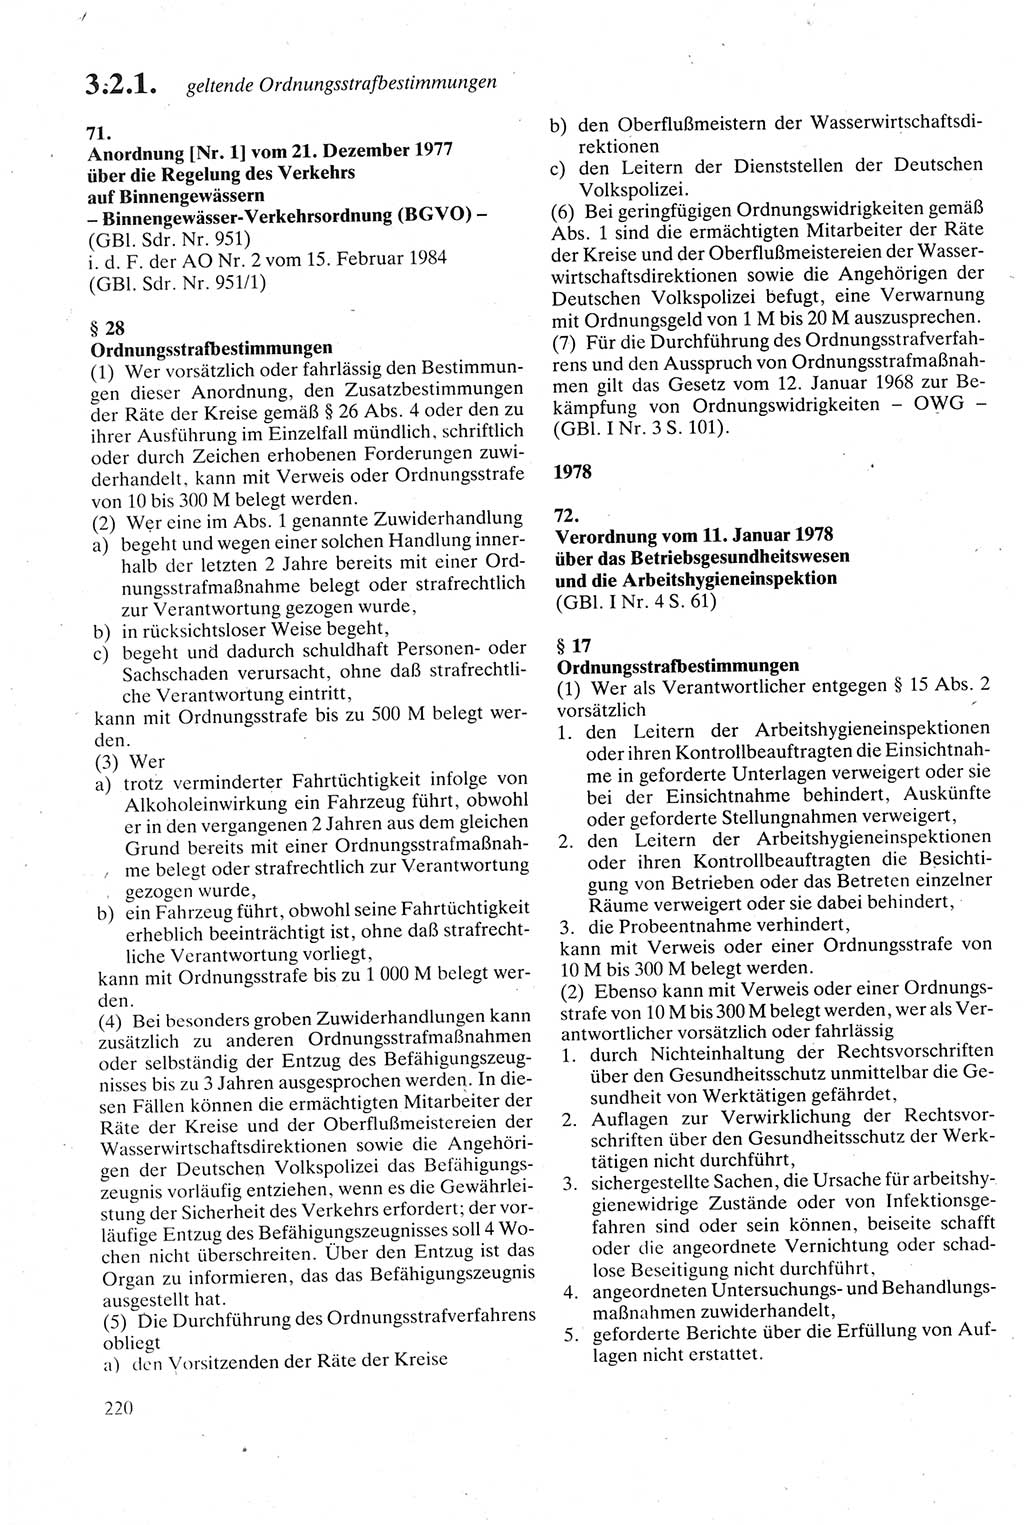 Strafgesetzbuch (StGB) der Deutschen Demokratischen Republik (DDR) sowie angrenzende Gesetze und Bestimmungen 1979, Seite 220 (StGB DDR Ges. Best. 1979, S. 220)